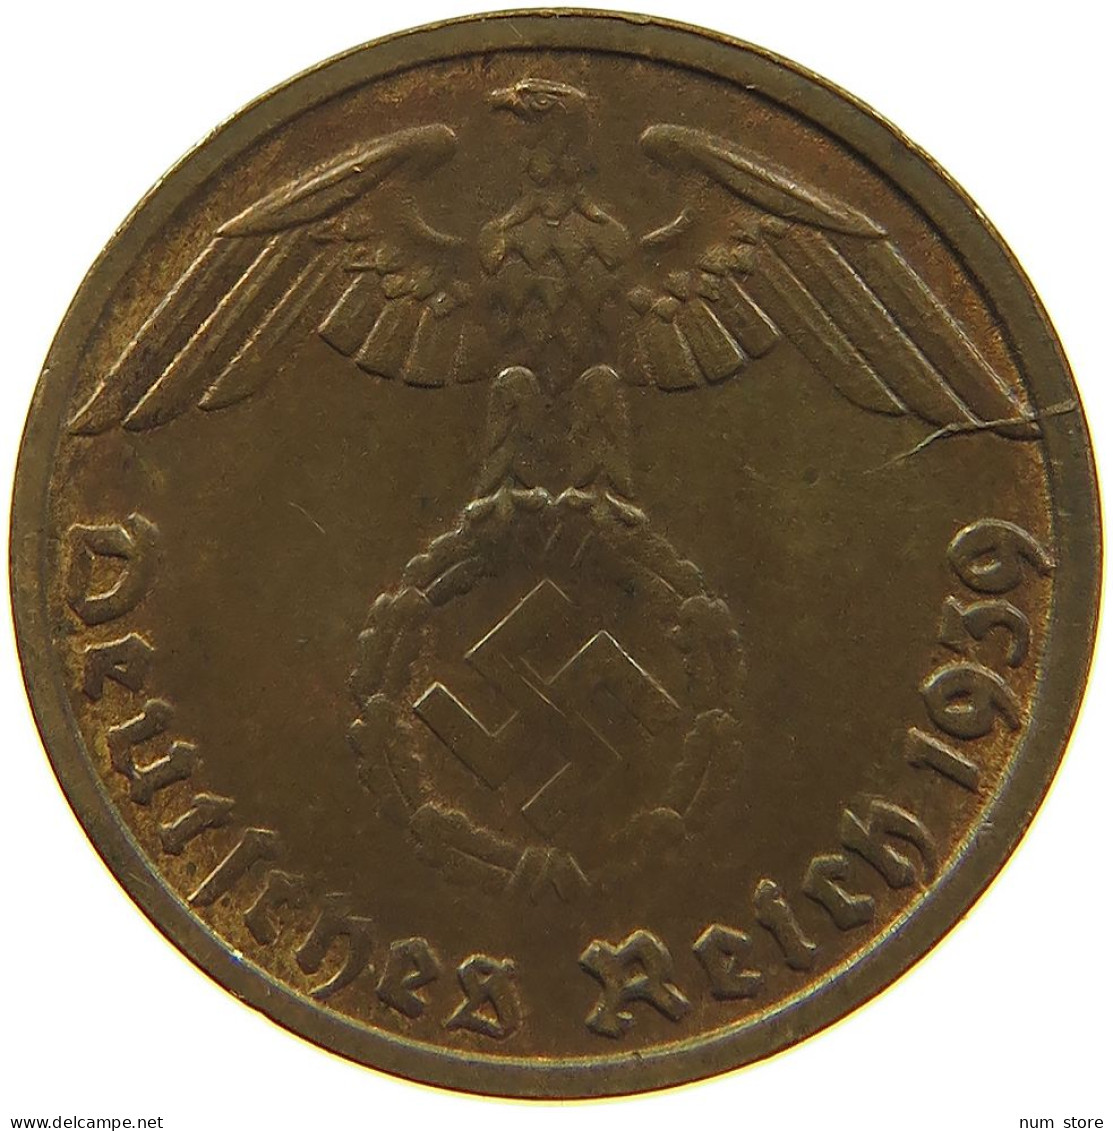 GERMANY 1 REICHSPFENNIG 1939 D #s083 0727 - 1 Reichspfennig